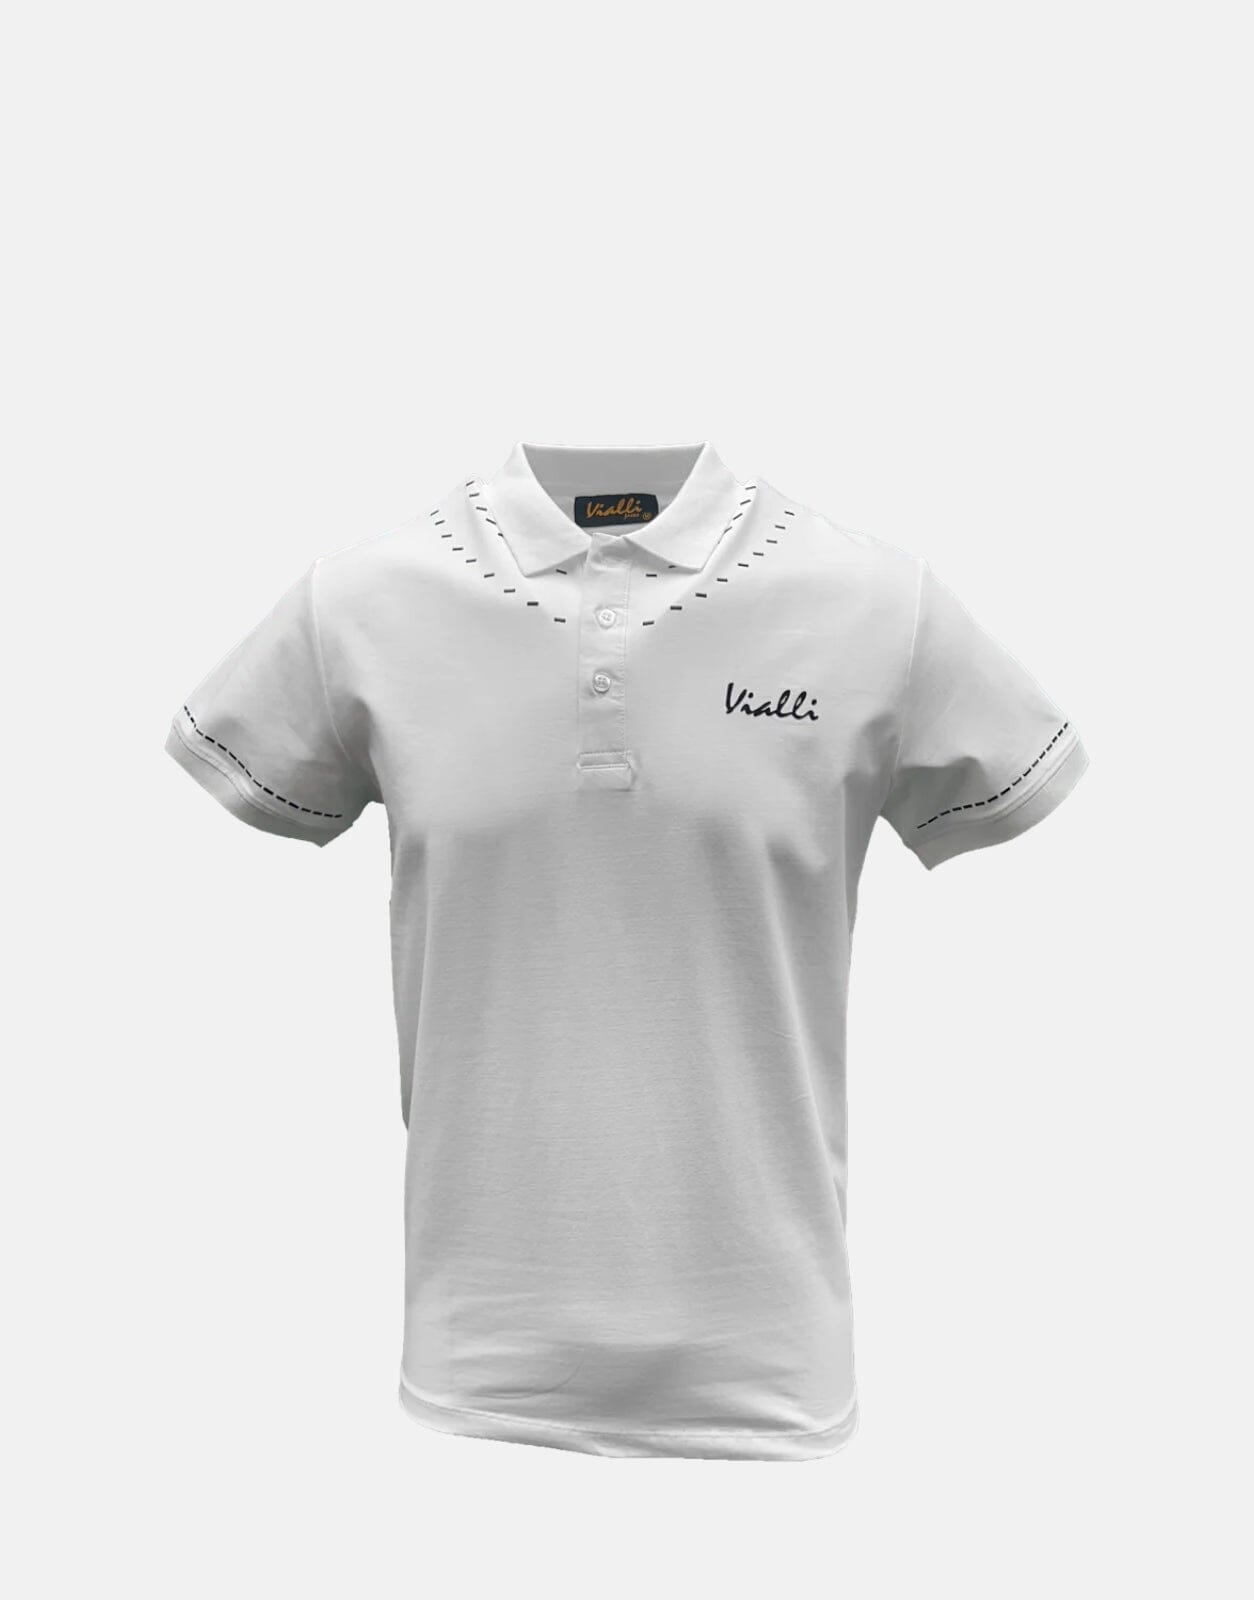 Vialli Flames White Polo Shirt, XXL / White